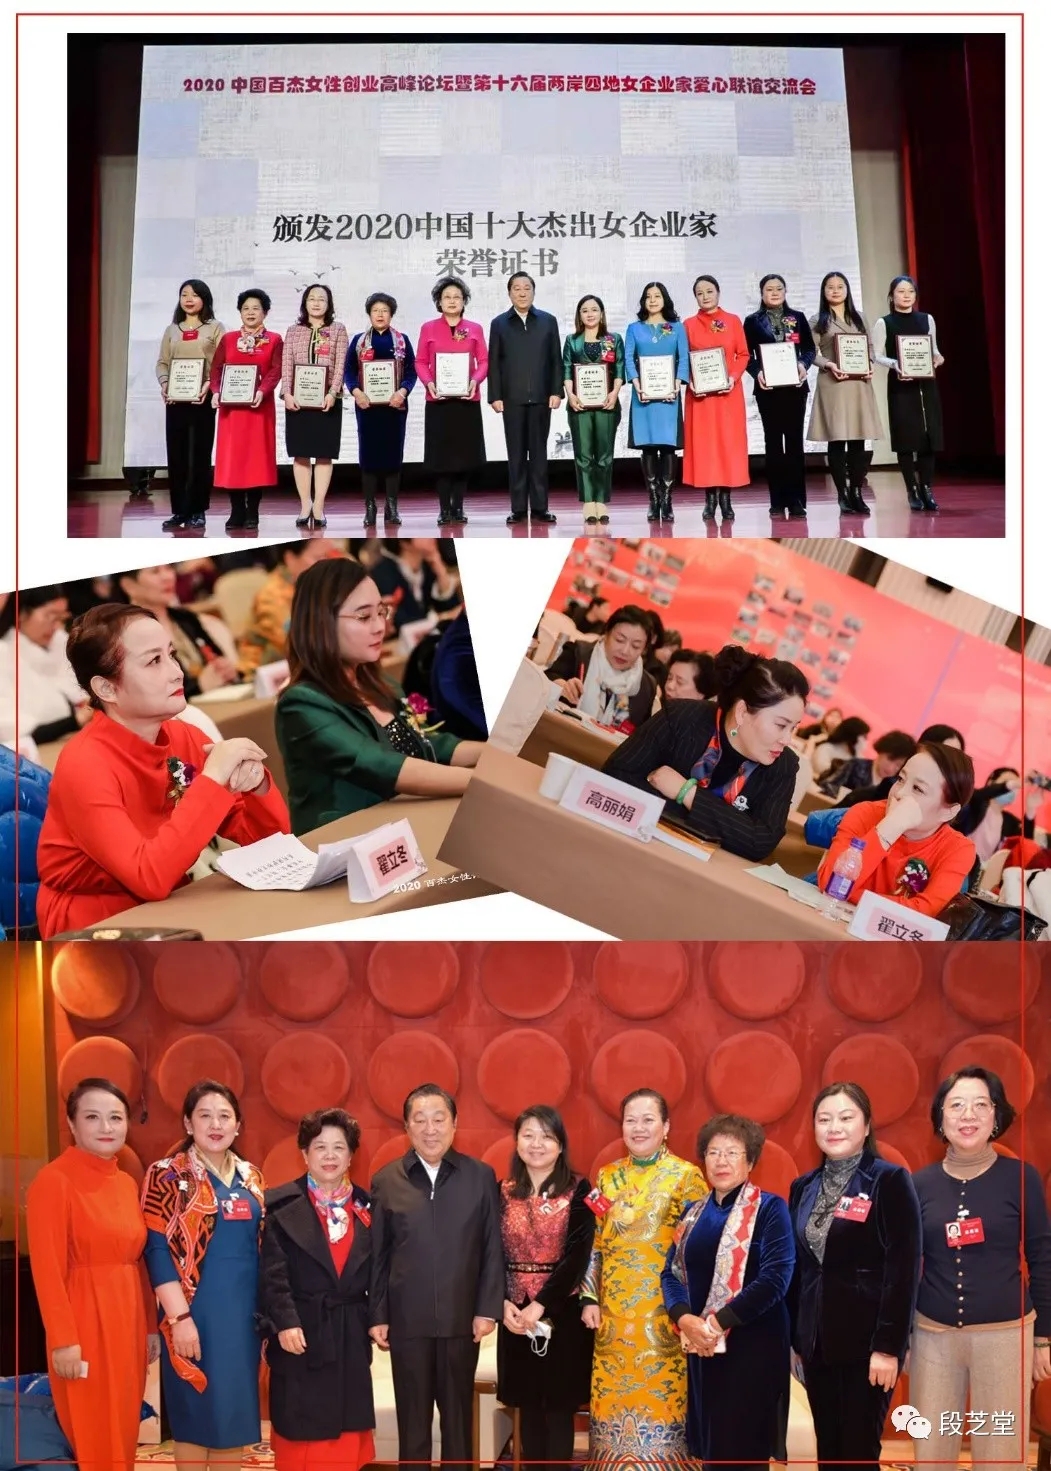 翟立冬-2020年中国十大杰出女性企业家